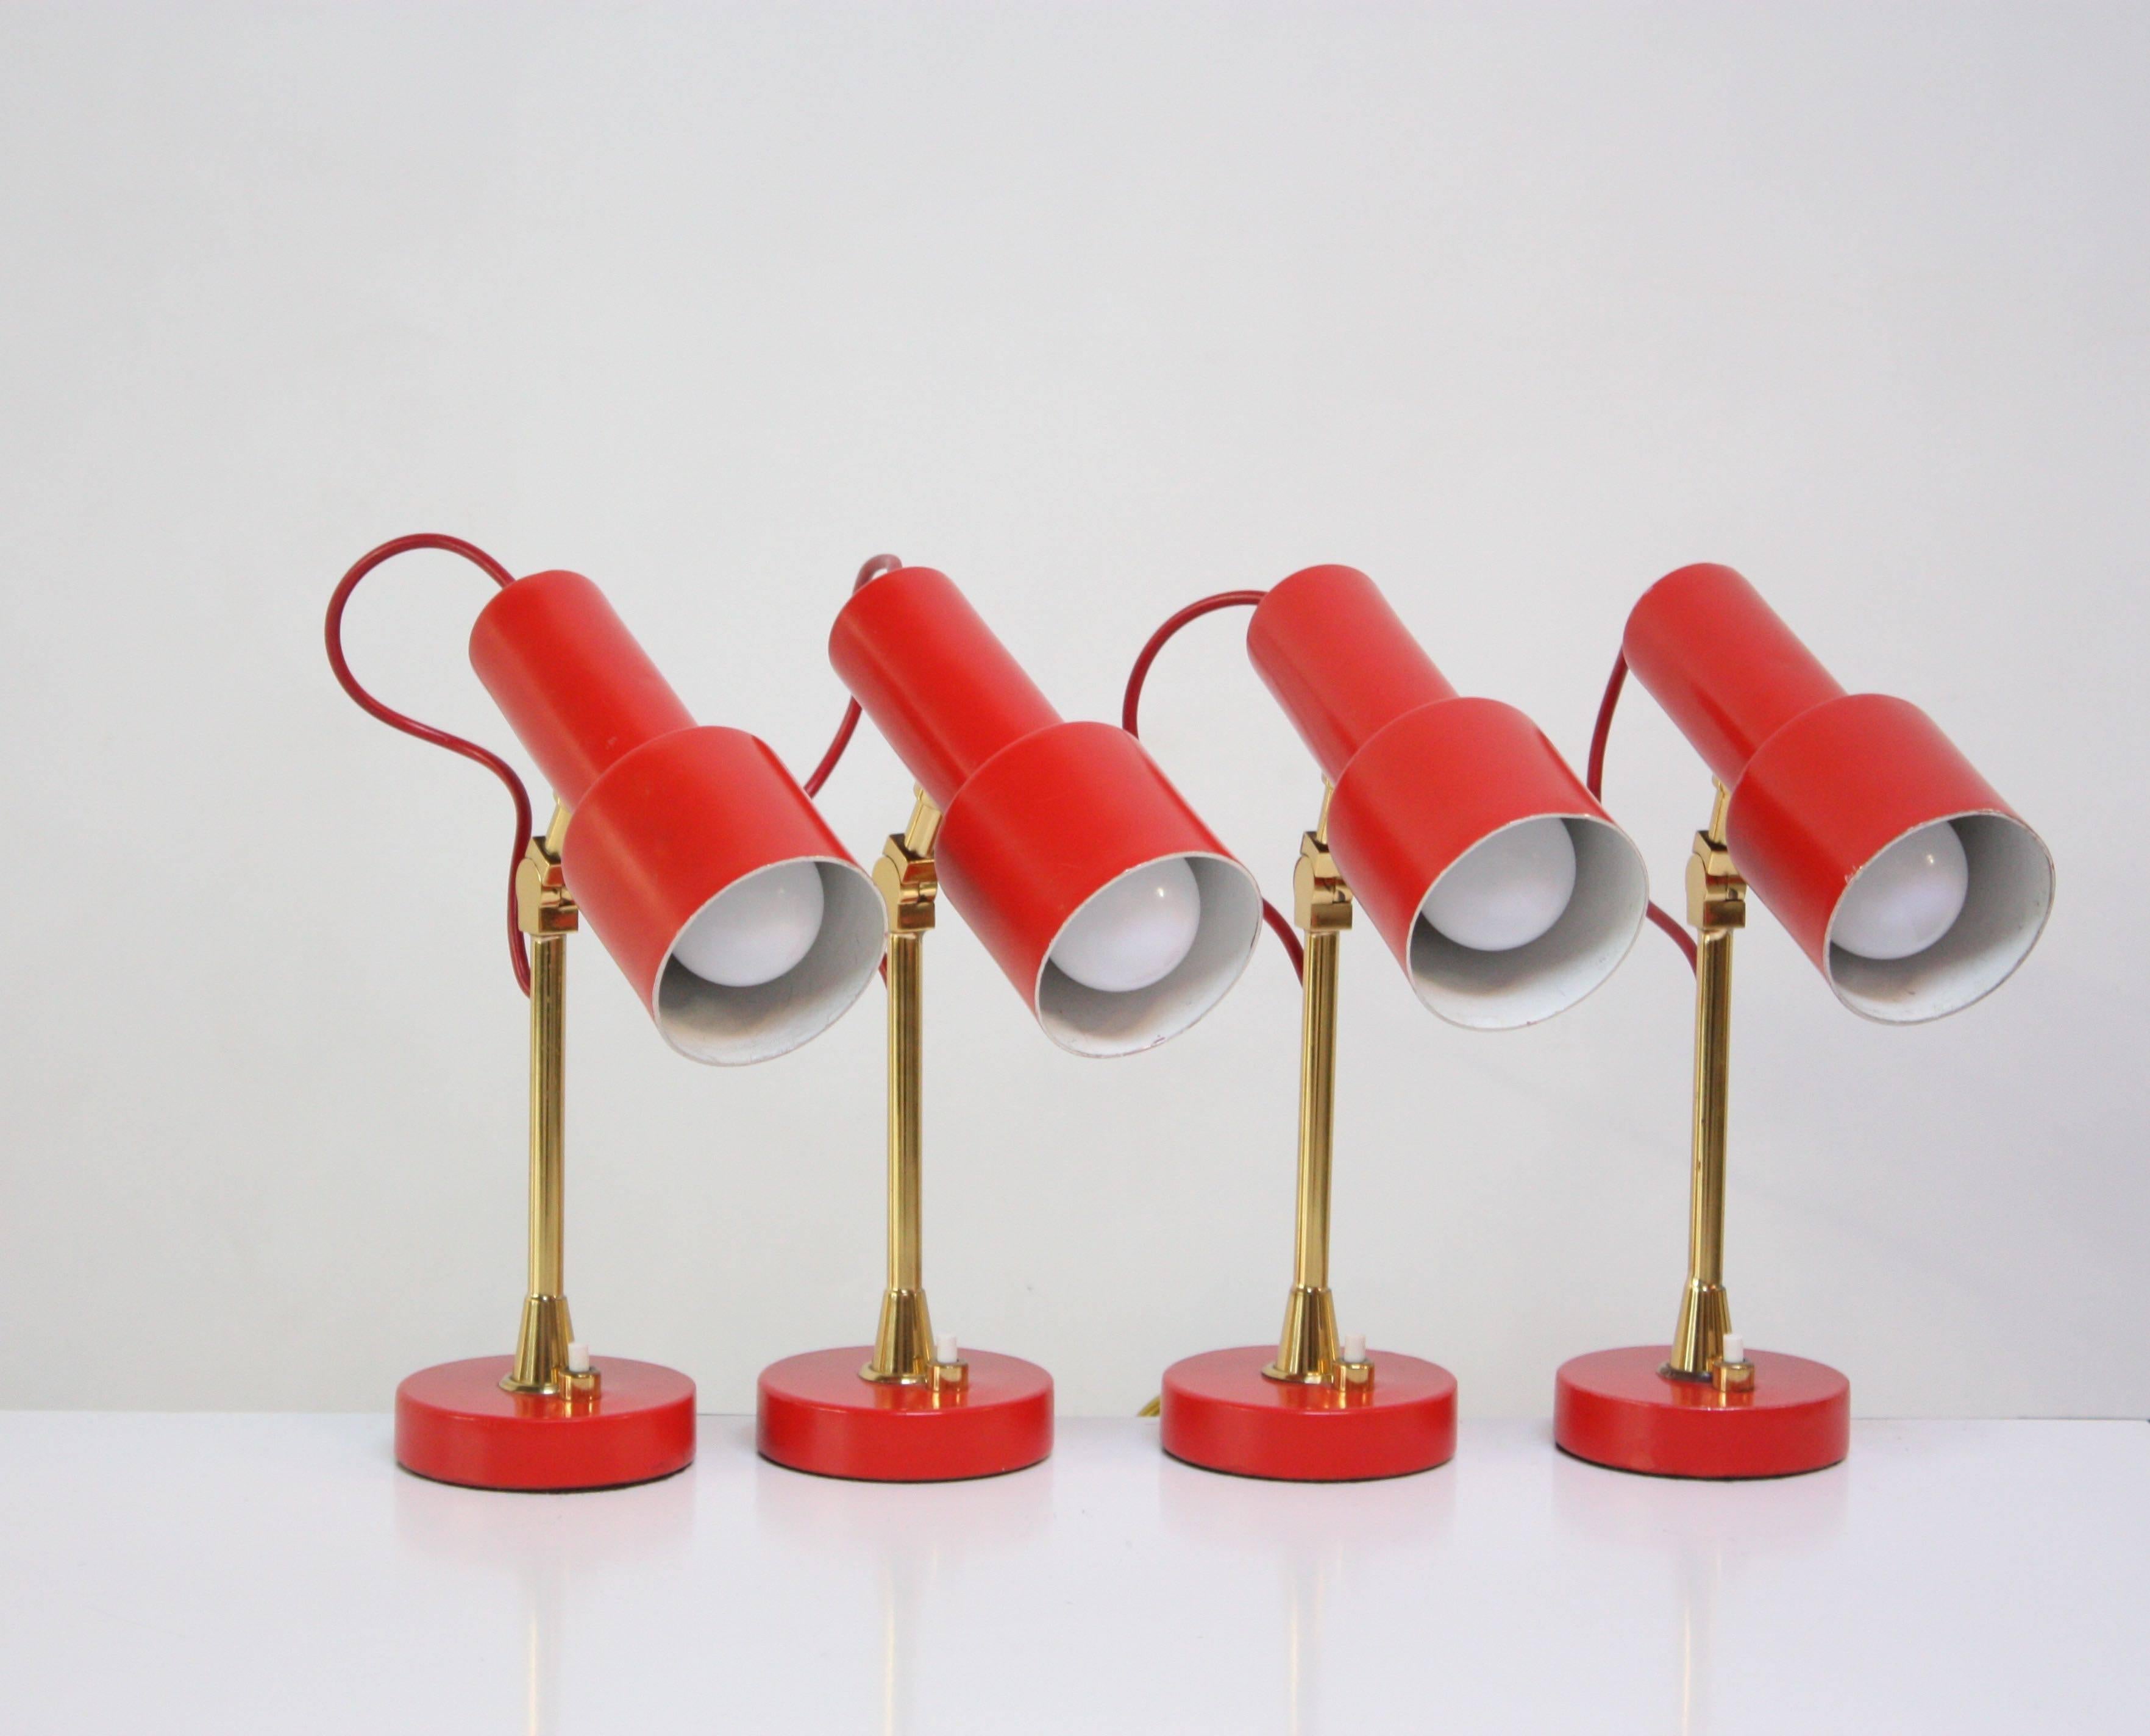 Diese kleinen, verstellbaren Stilux-Tischlampen befinden sich im Originalzustand und haben ihre rote Originalfarbe und alle massiven Messingbeschläge (Schrauben) behalten. Sie wurden komplett neu verkabelt und sind einsatzbereit. Sie stammen aus dem